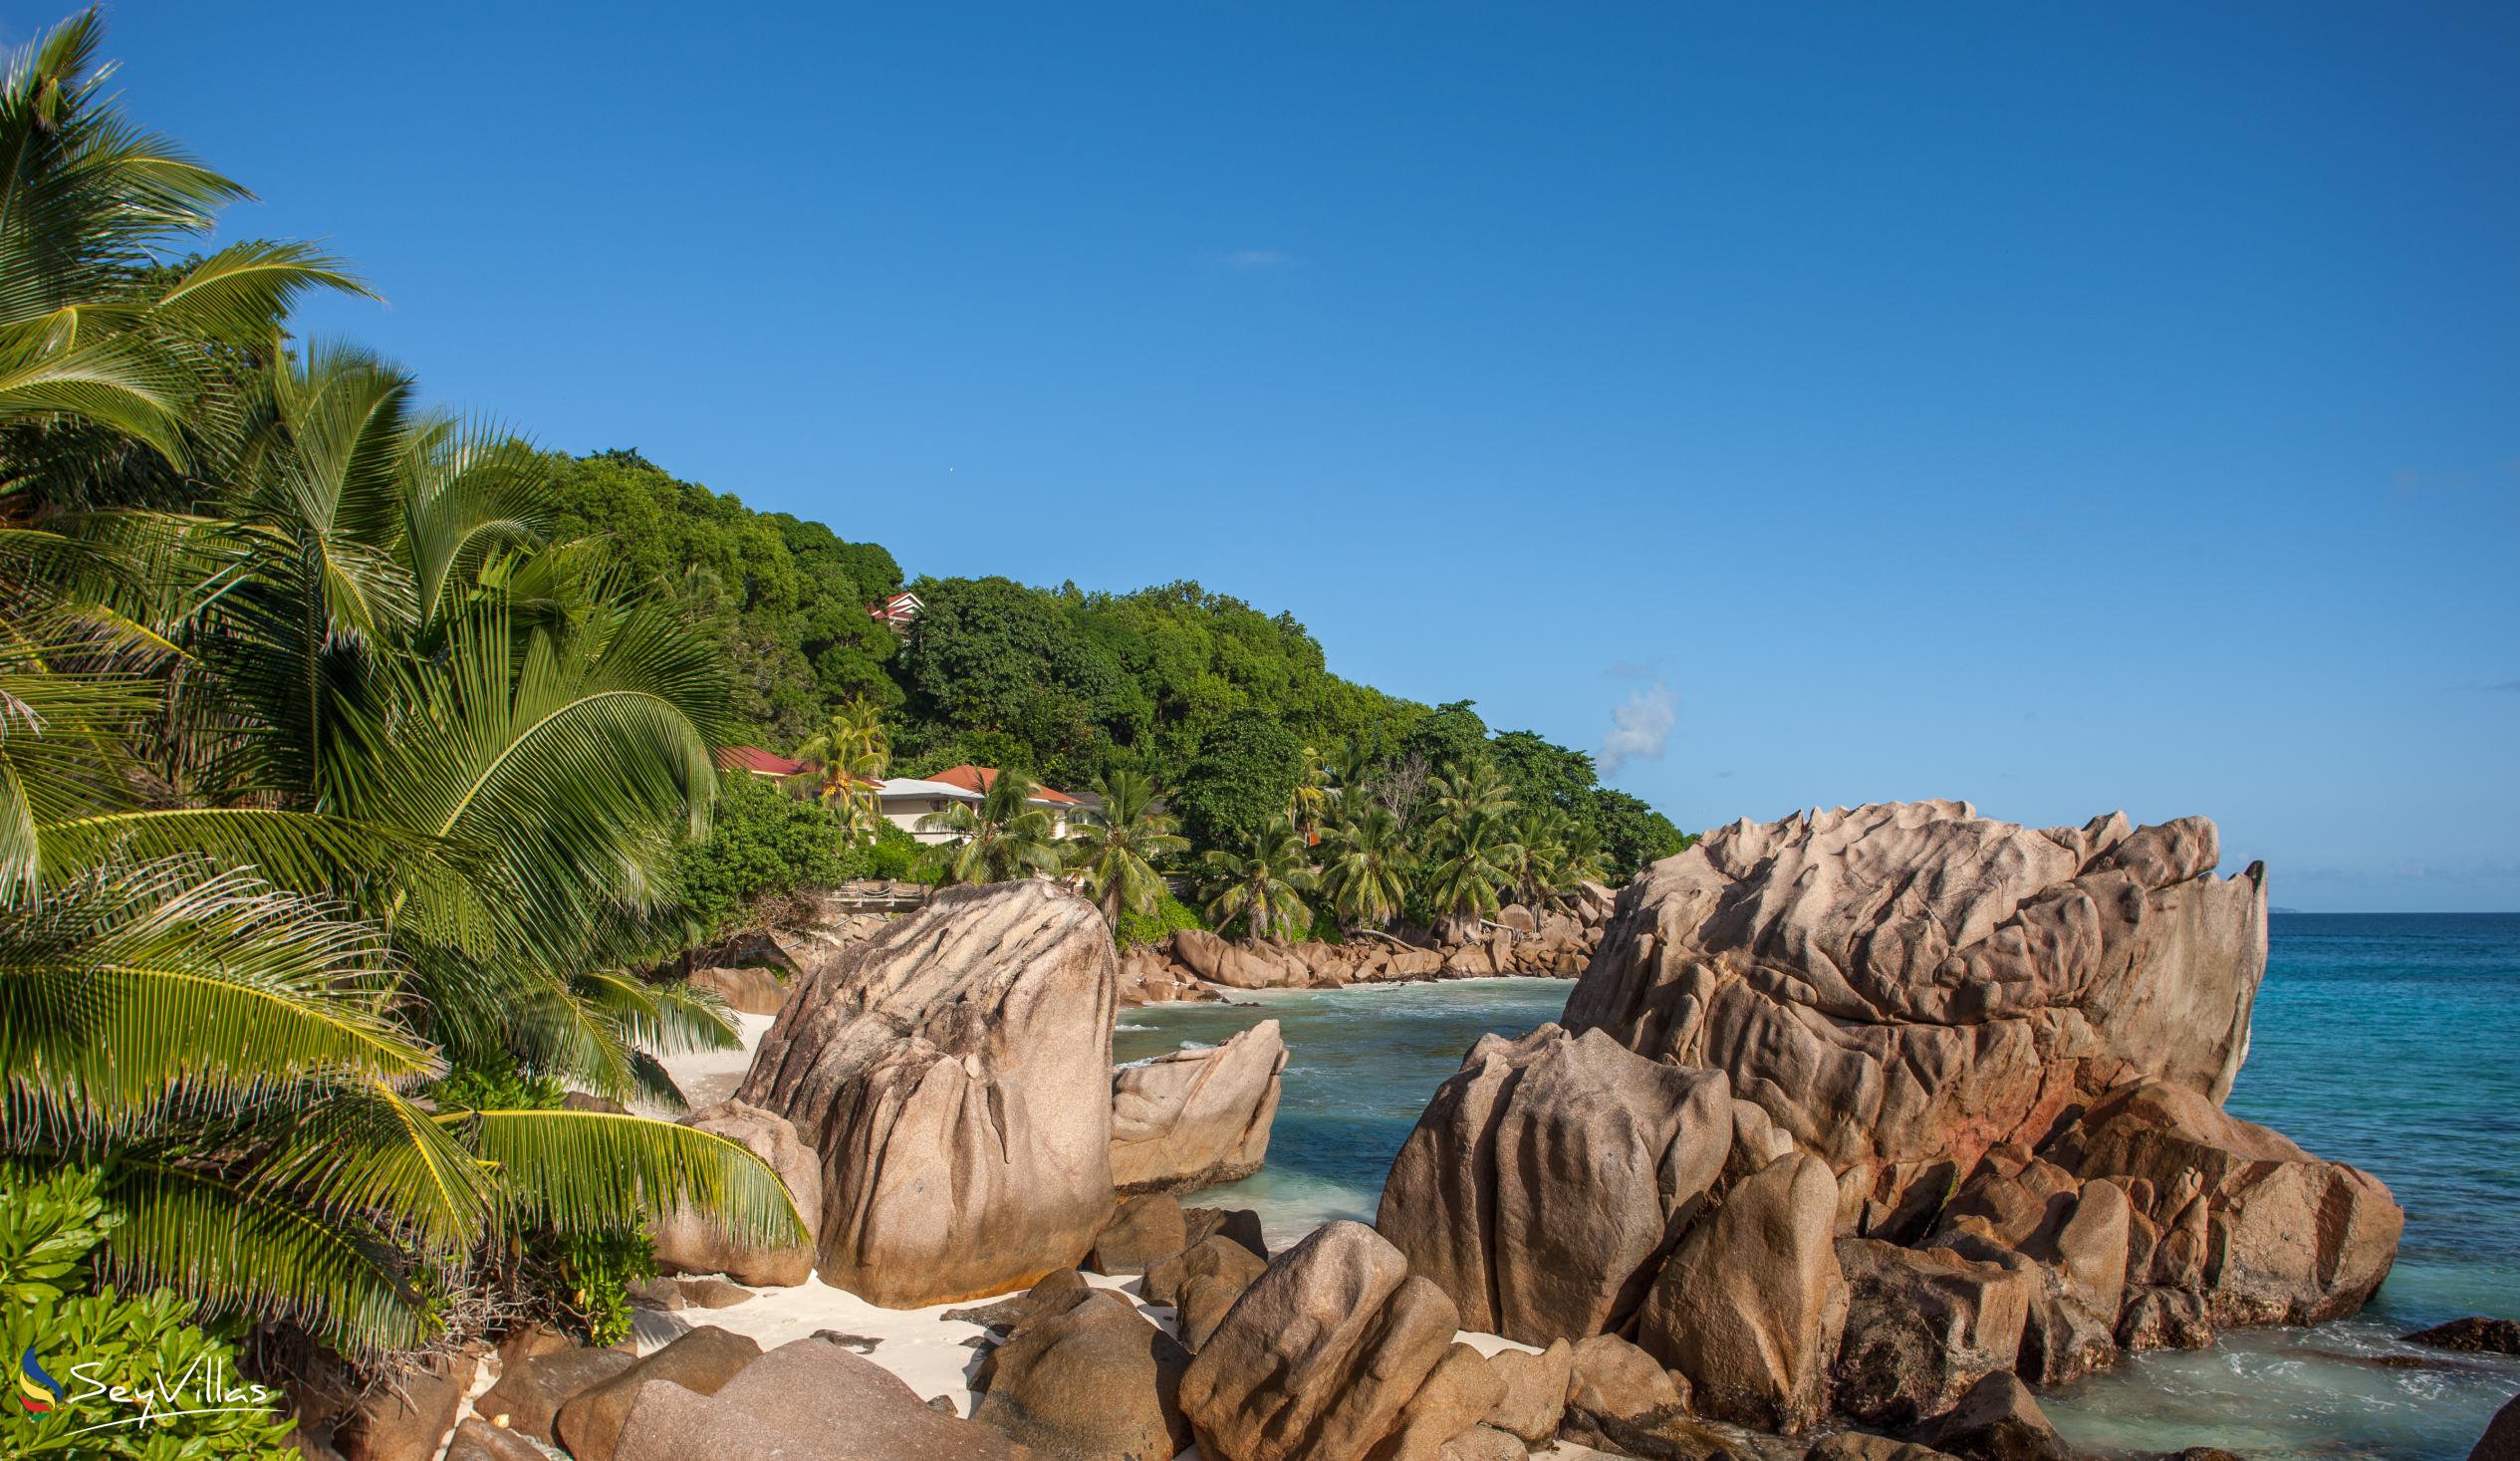 Photo 57: Fleur de Lys - Beaches - La Digue (Seychelles)